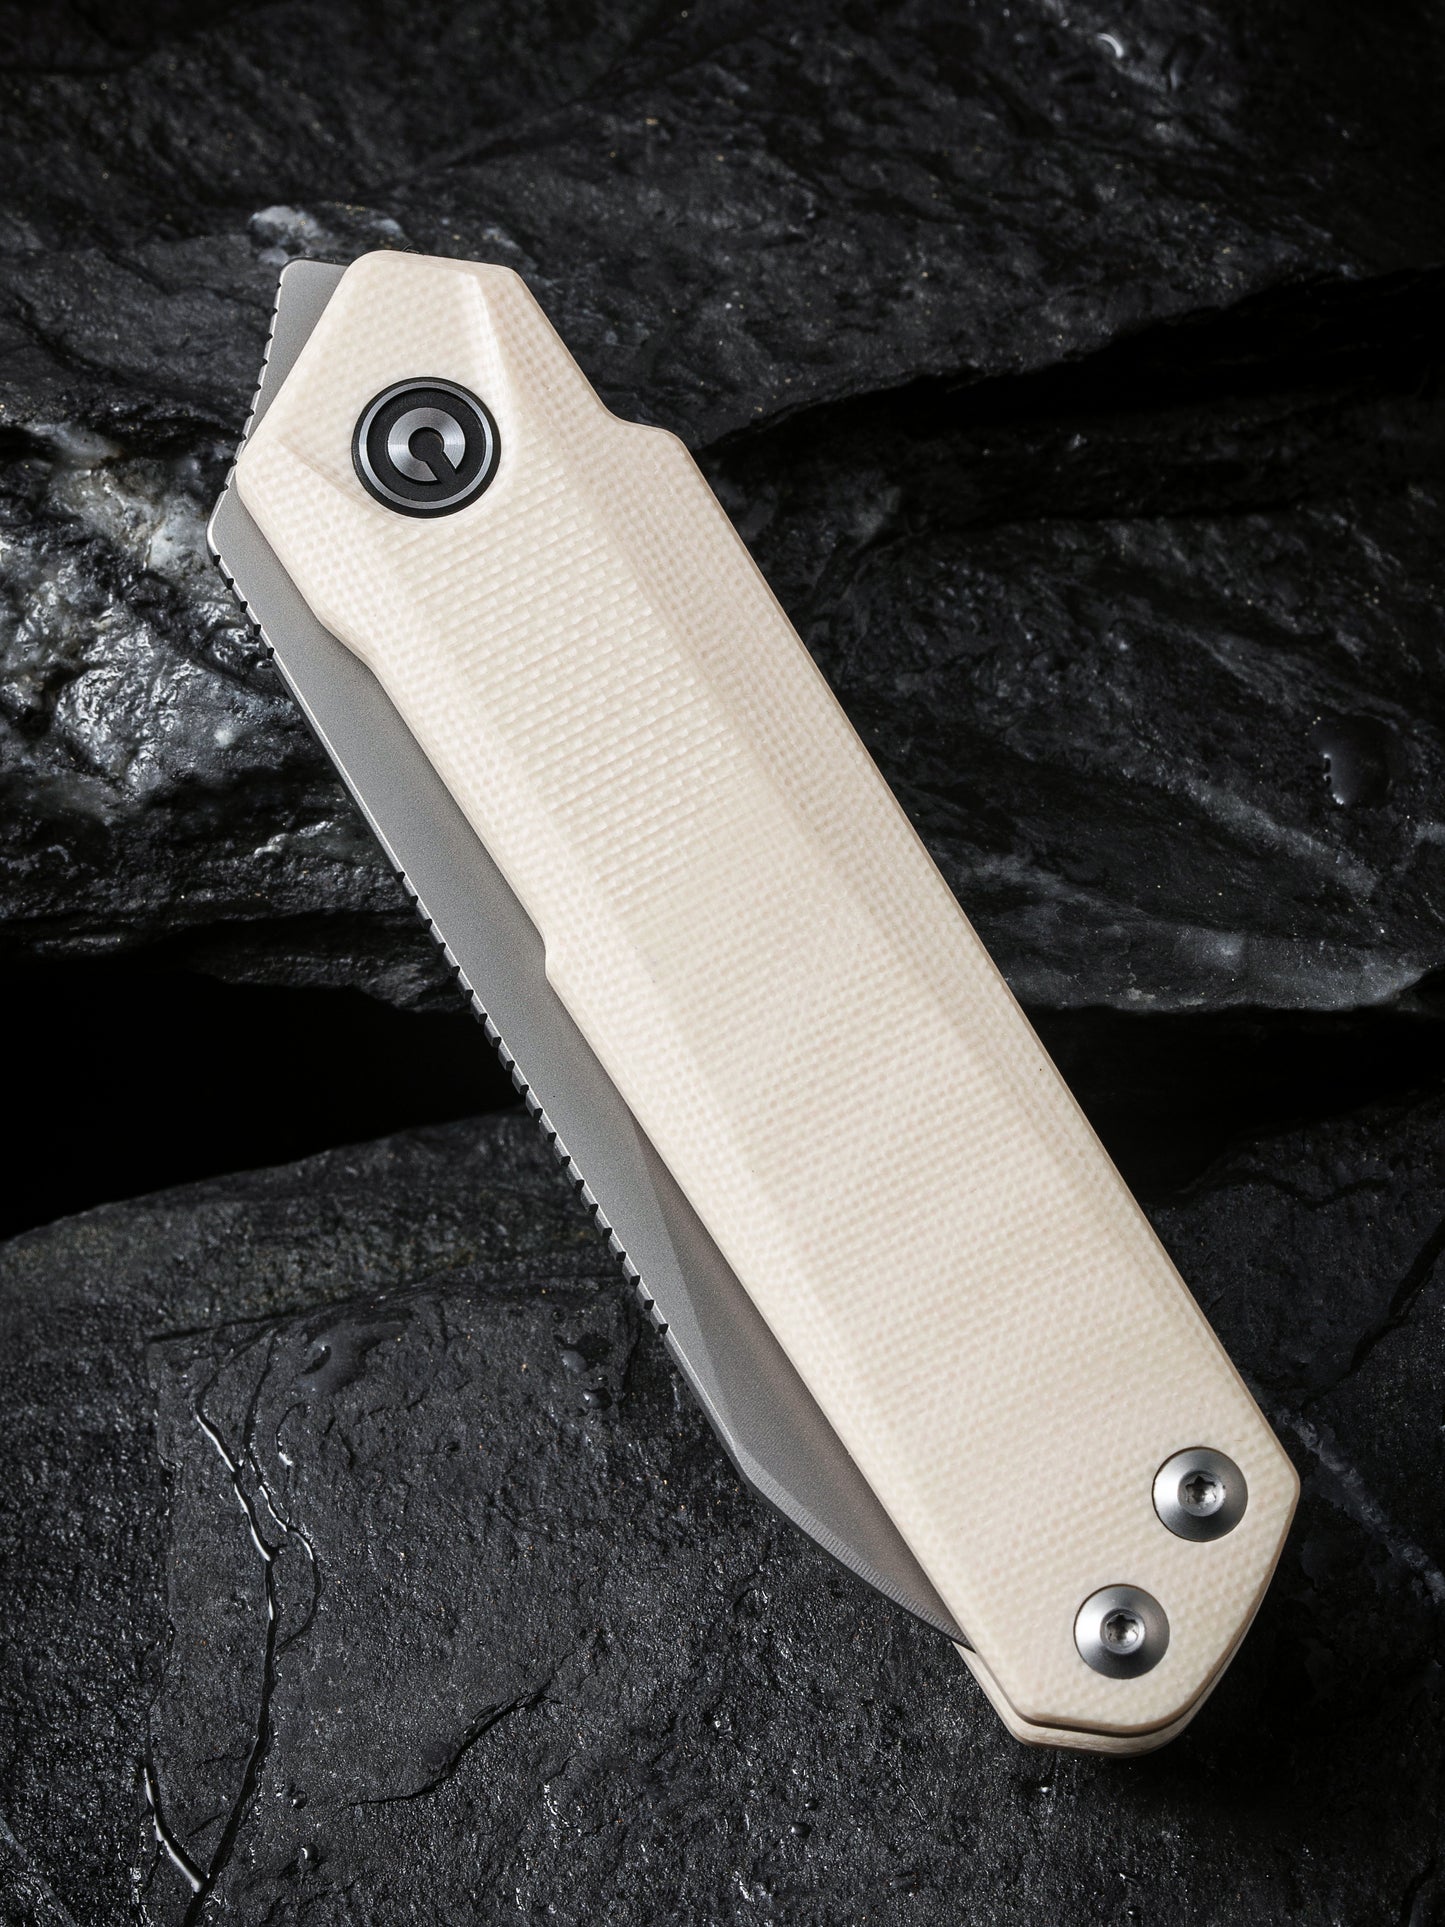 Civivi Ki-V Plus 2.52" Nitro-V Ivory G10 Linerlock Folding Knife by Ostap Hel C20005B-2